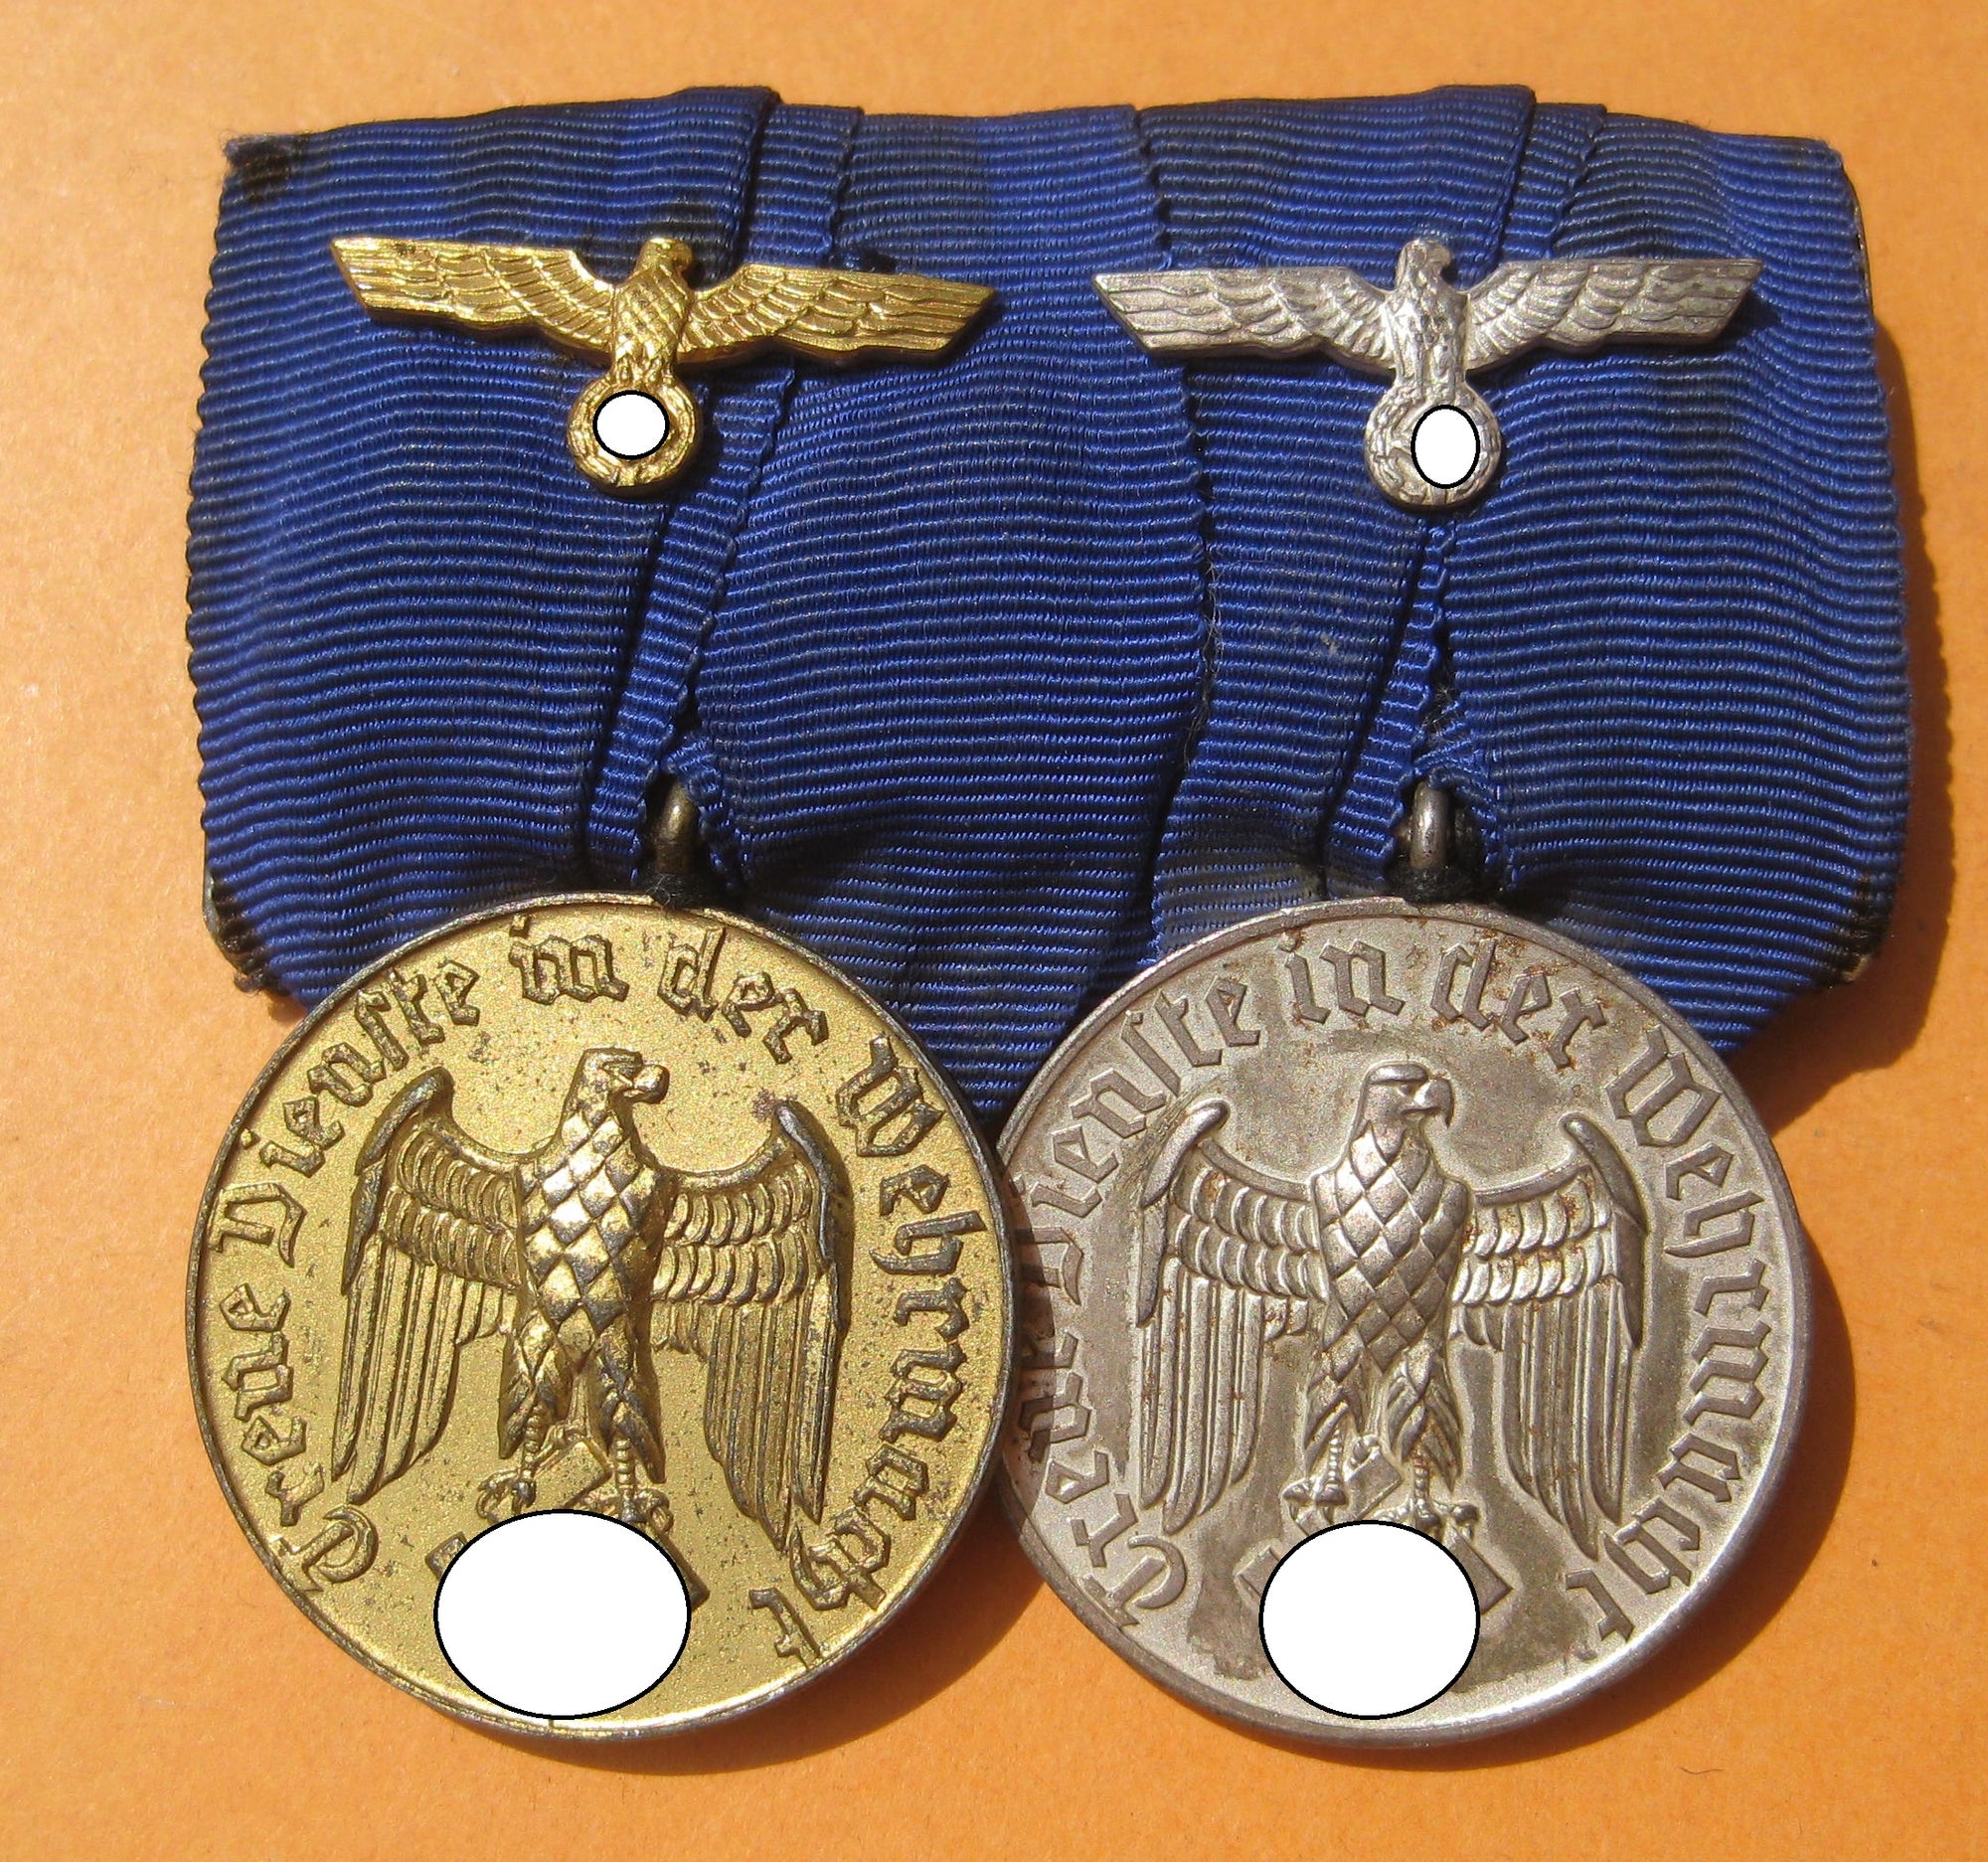 2er Ordensspange Dienstauszeichnung der Wehrmacht für 4 Jahre & 12 Jahre H.W.